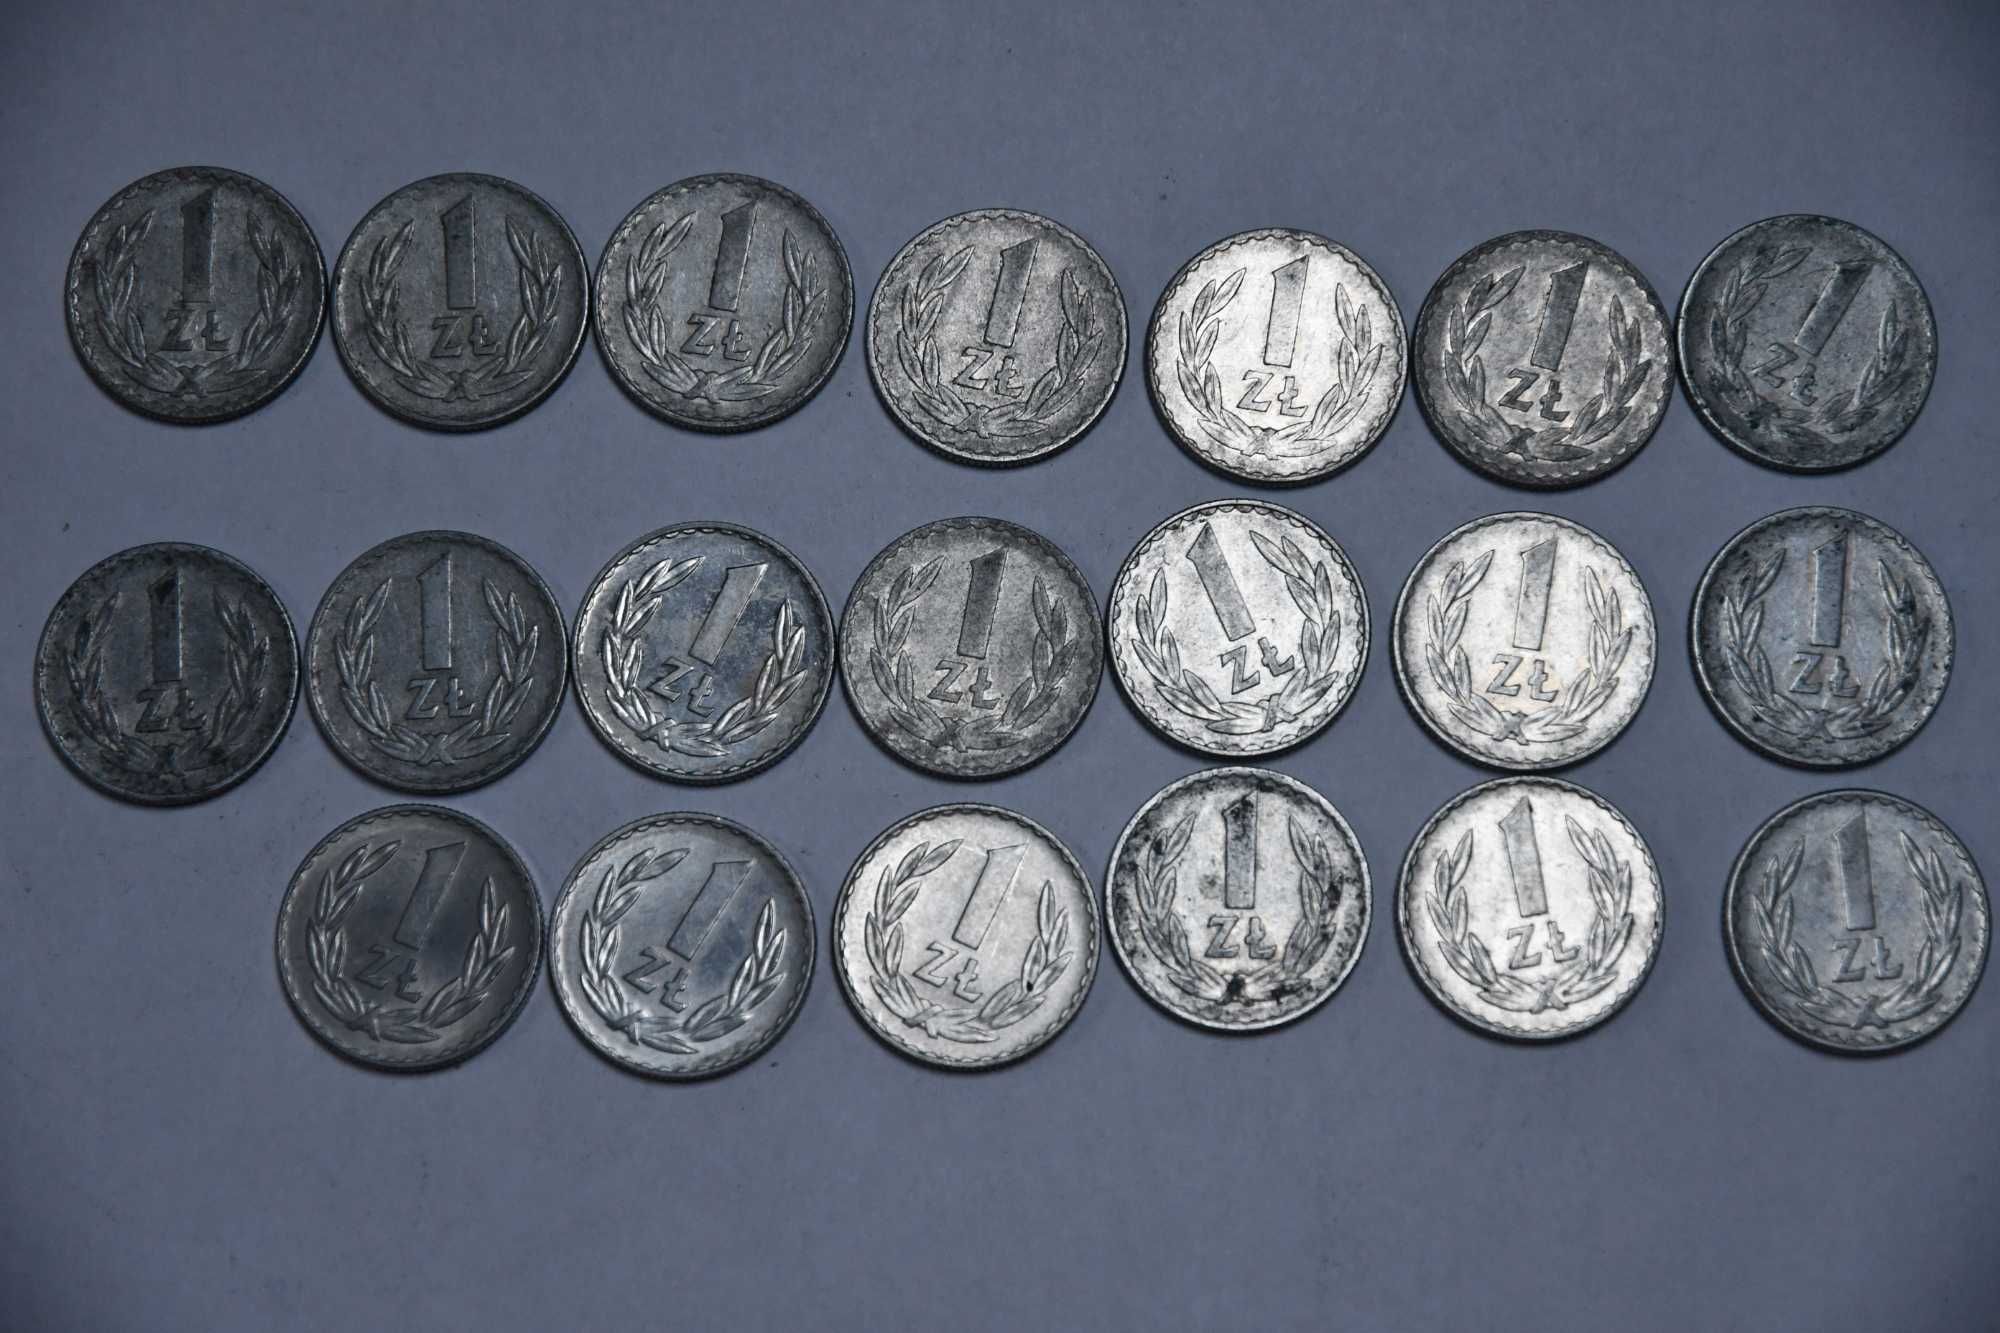 75 Monet 1 Złoty od 1970 do 1988 PRL